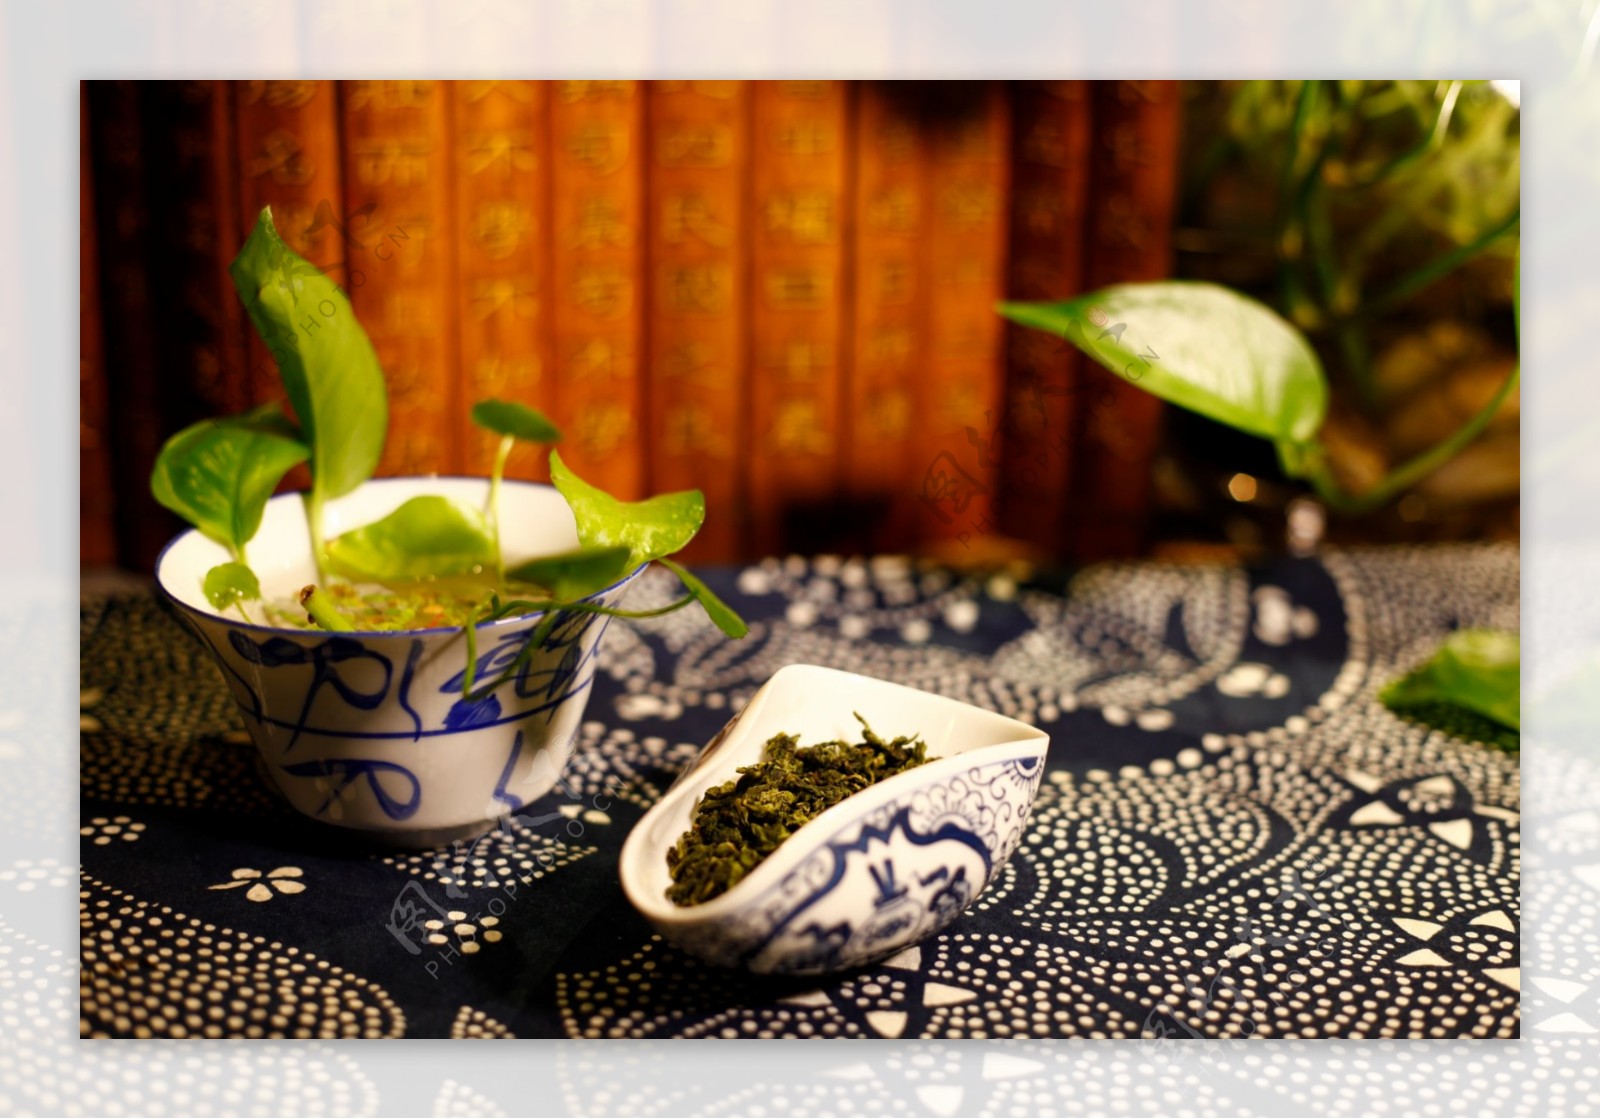 茶茶道摄影图片